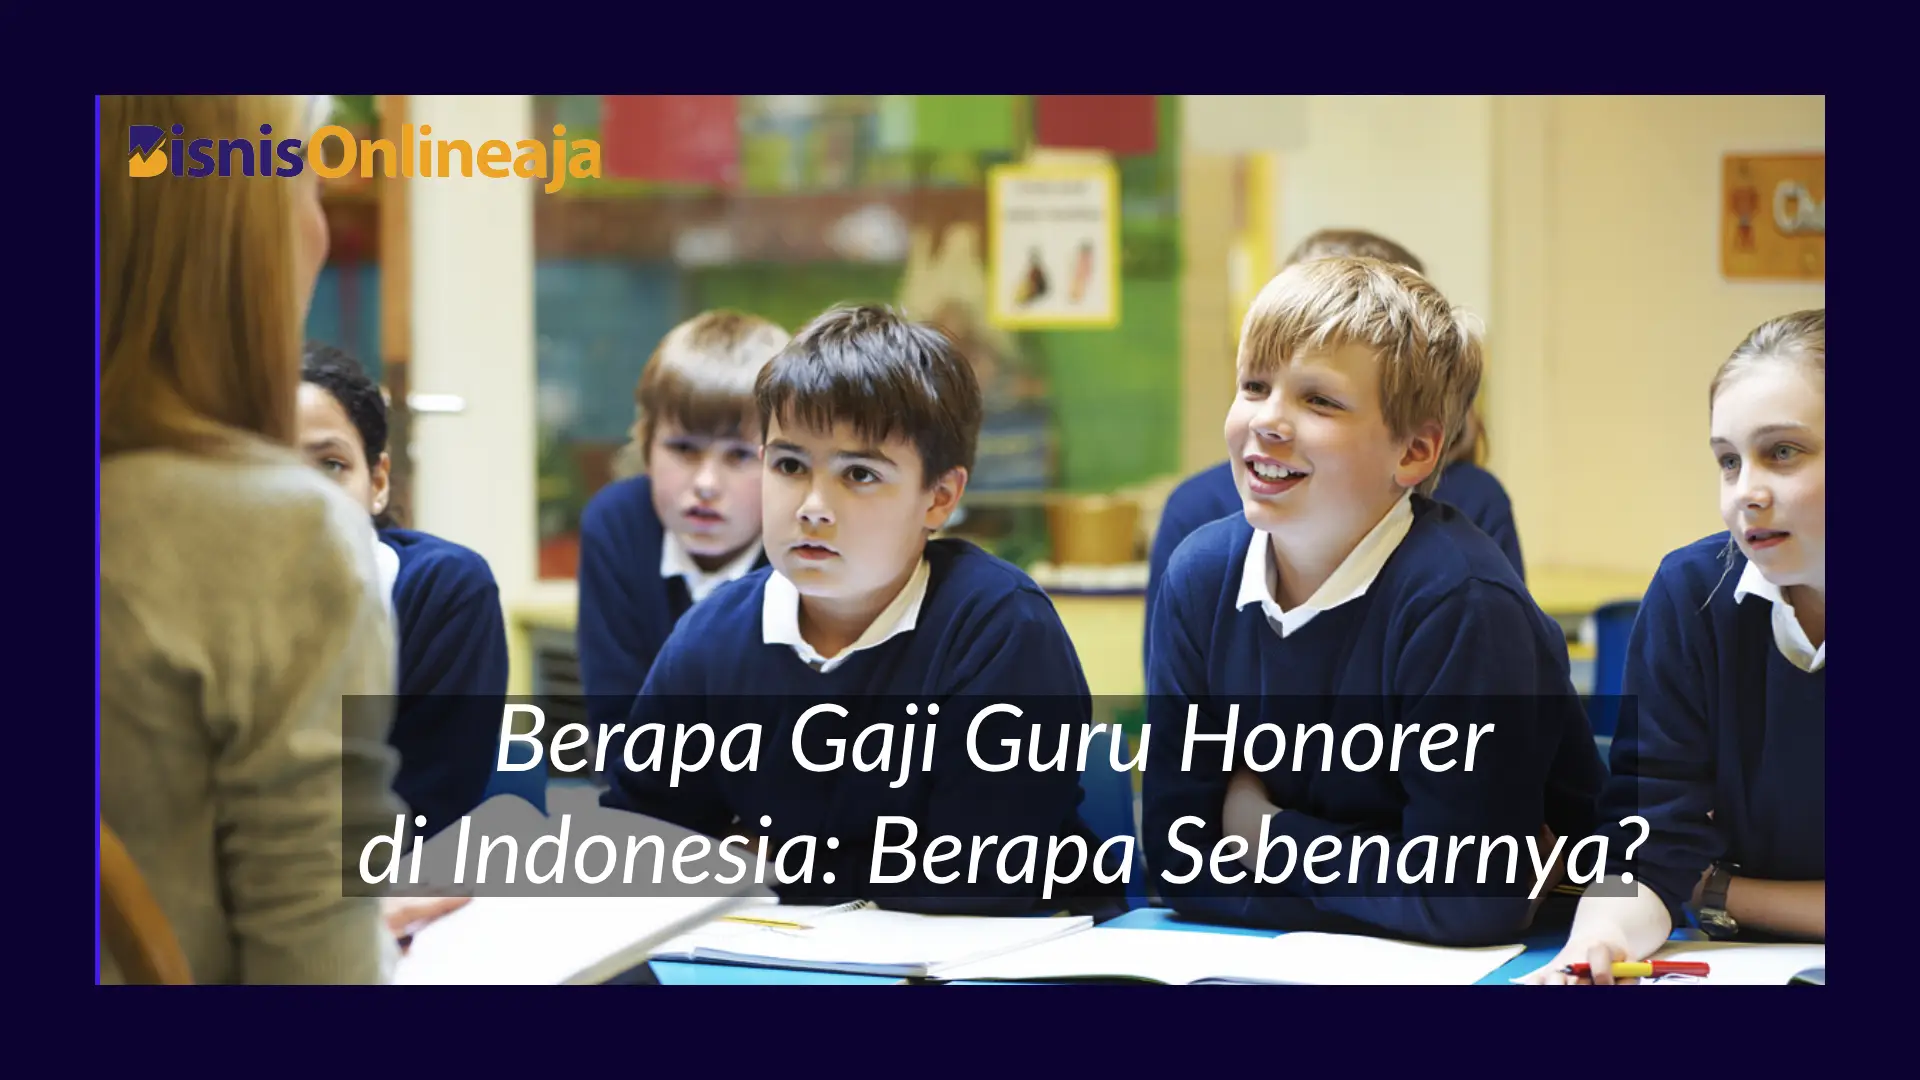 Berapa Gaji Guru Honorer di Indonesia: Berapa Sebenarnya?